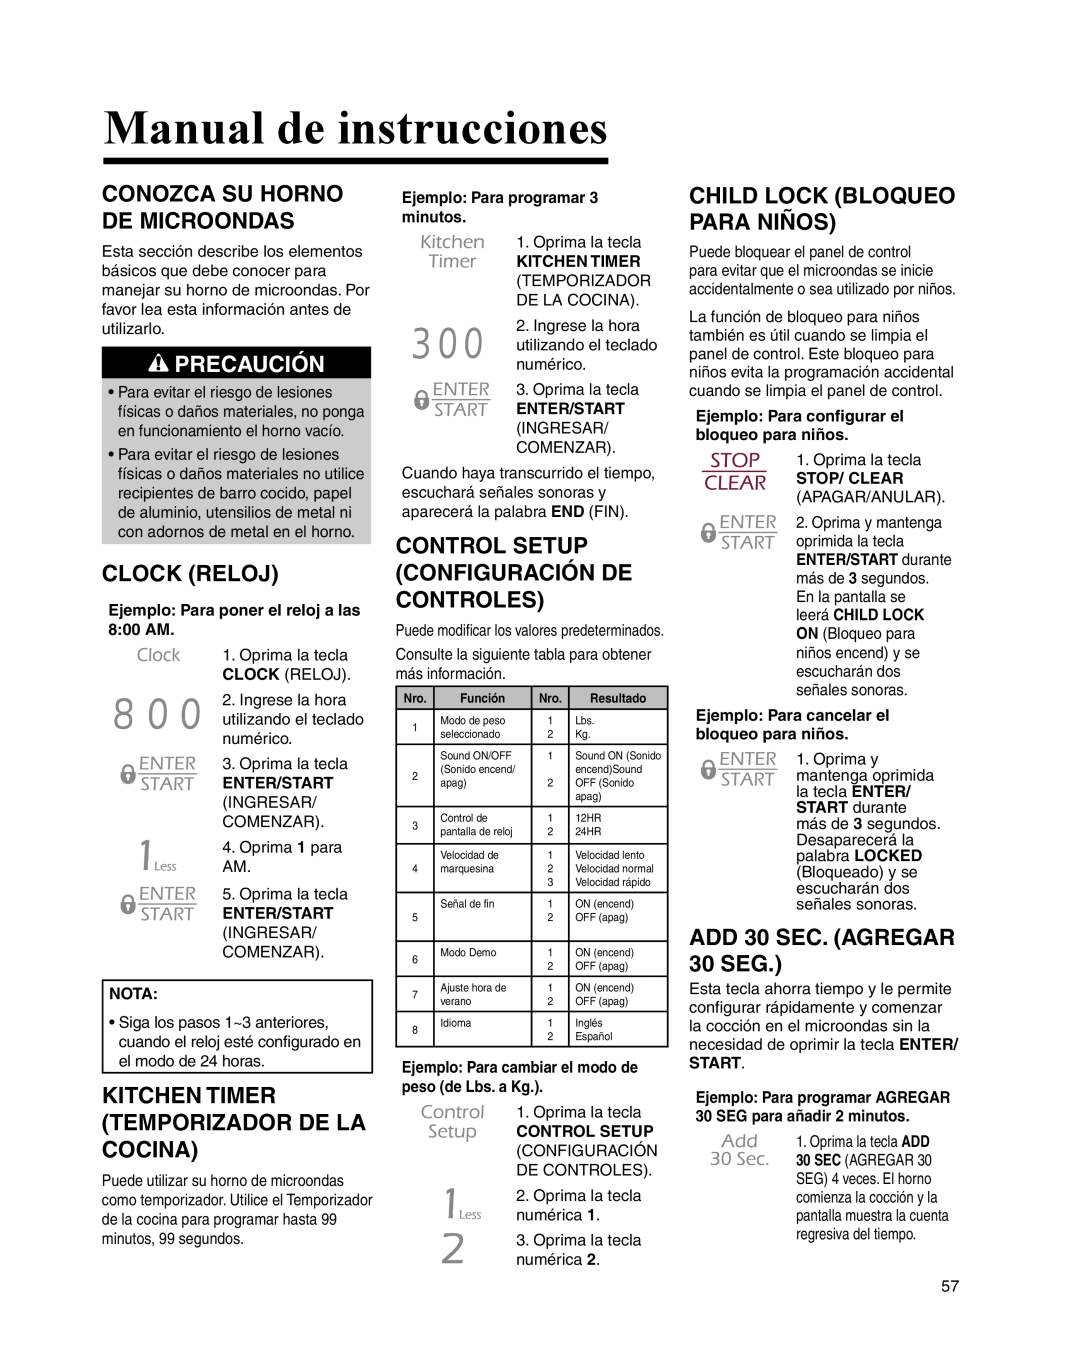 Maytag UMC5200BCW Manual de instrucciones, Conozca Su Horno De Microondas, Clock Reloj, Child Lock Bloqueo Para Niños 